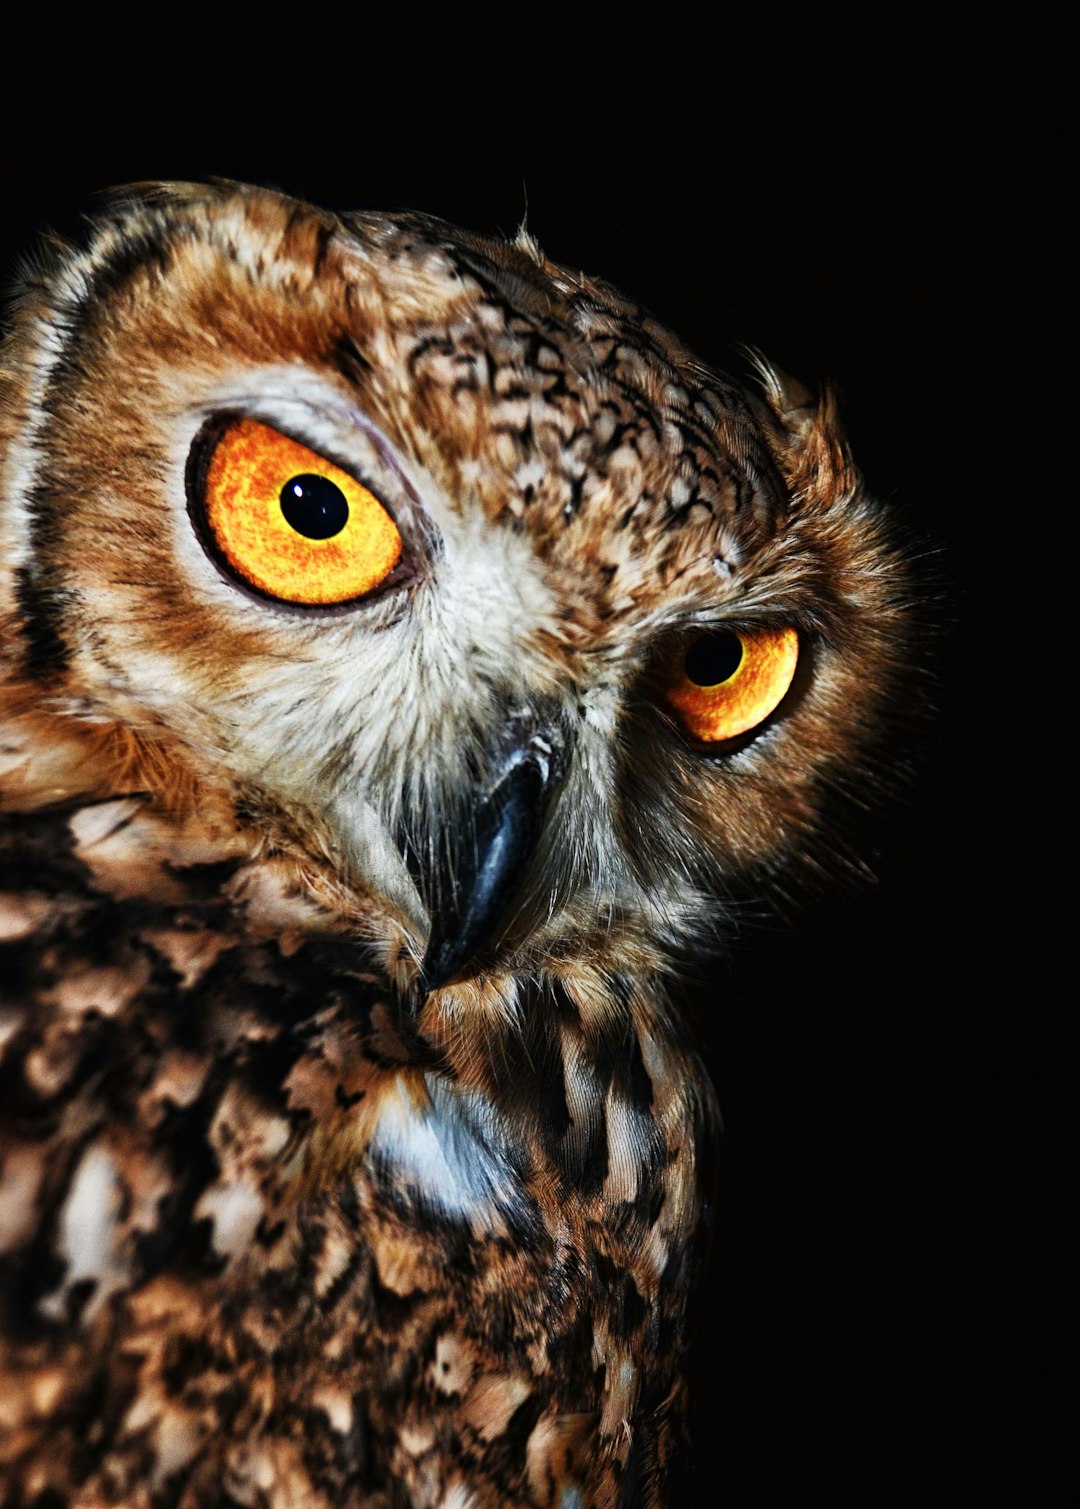  brown owl close up photo owl